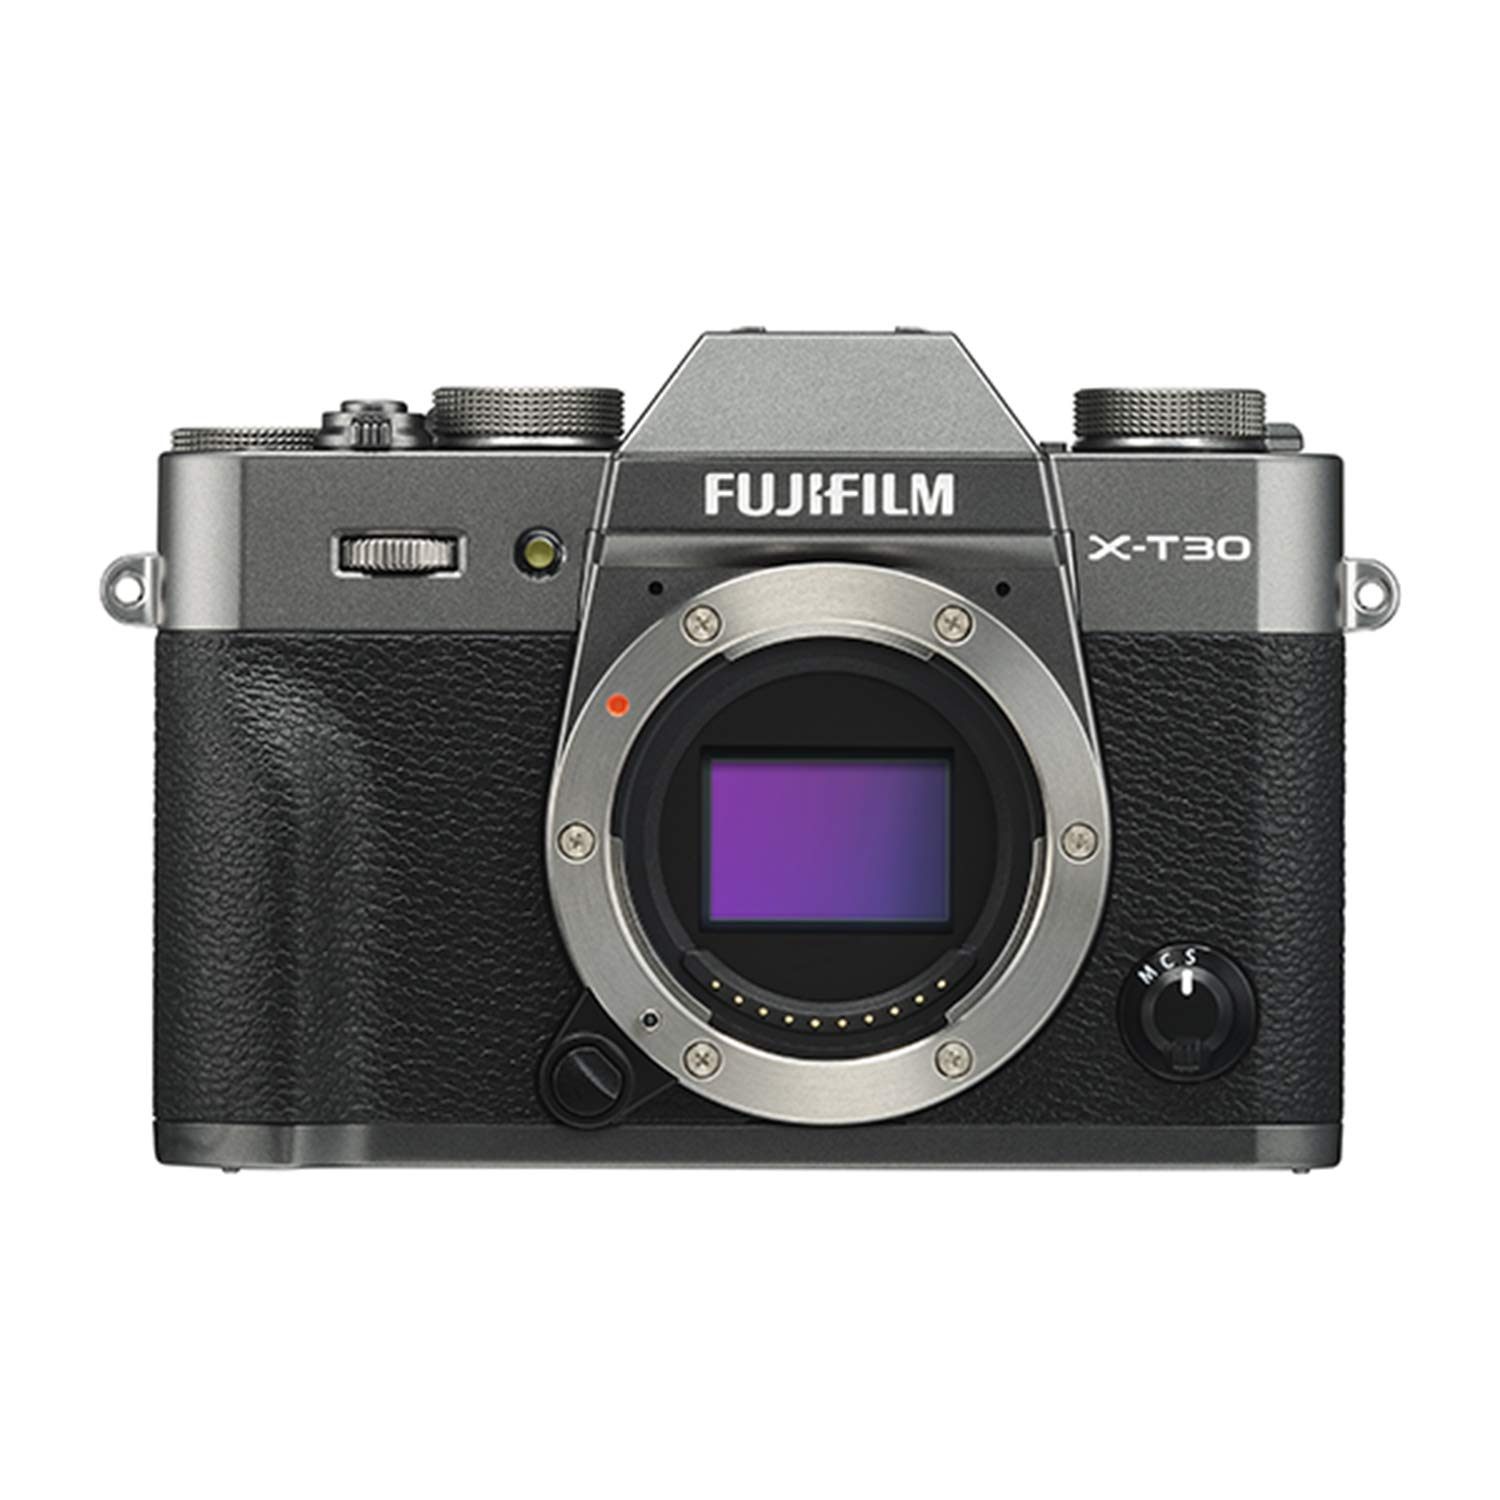 Fujifilm फुजीफिल्म एक्स-टी 30 मिररलेस डिजिटल कैमरा बॉडी - चारकोल सिल्वर